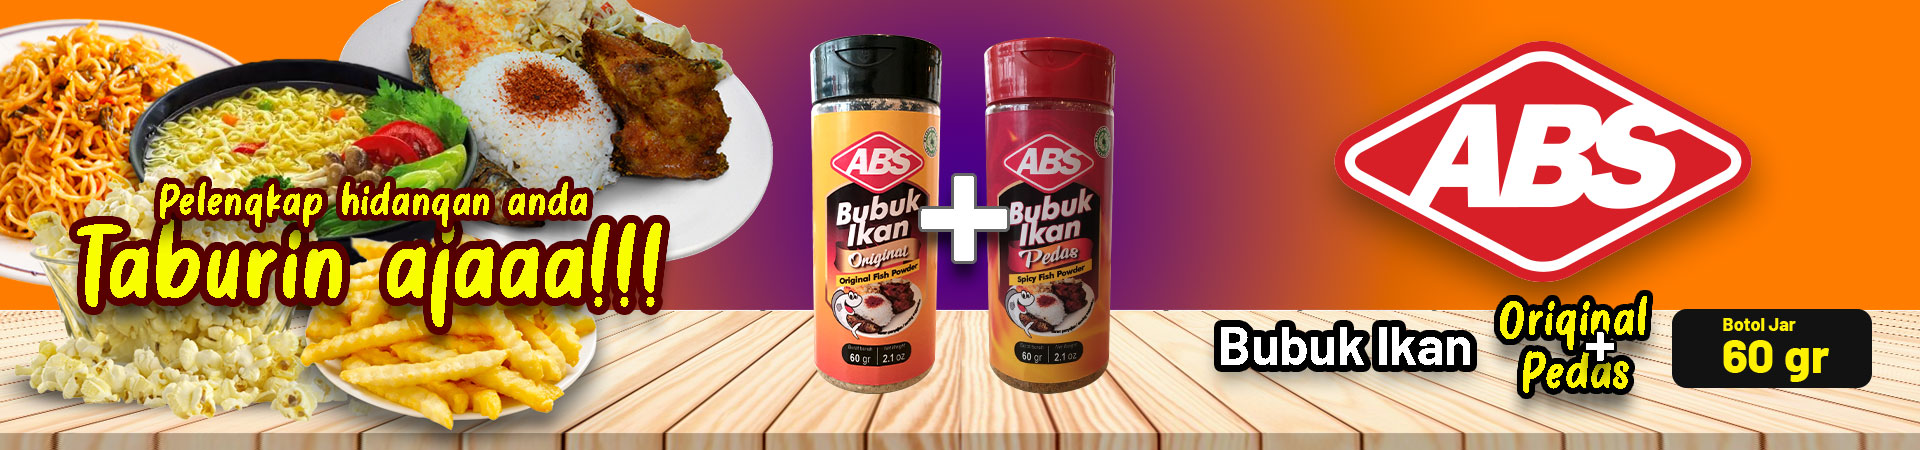 ABS Bubuk Ikan Original Jar 60g 1+1 Pedas